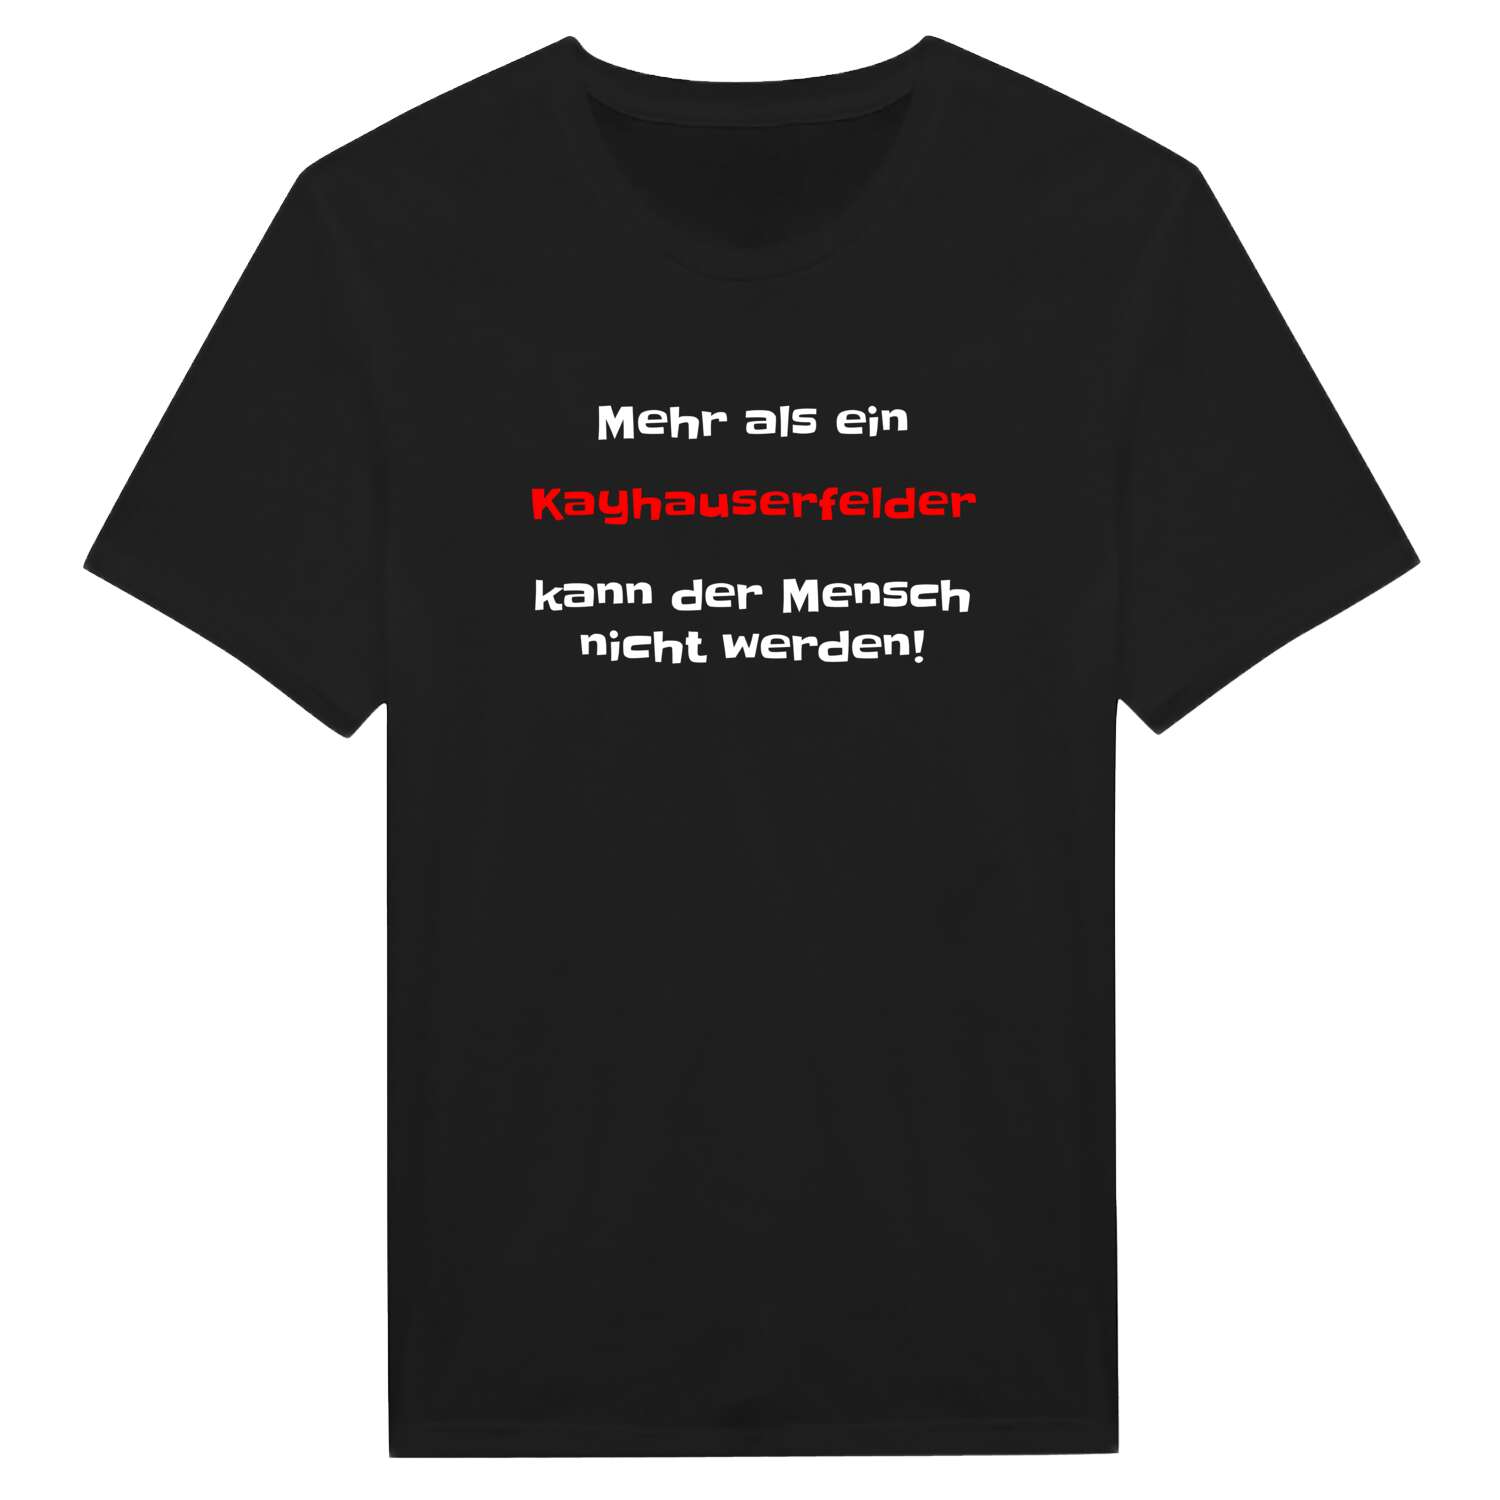 Kayhauserfeld T-Shirt »Mehr als ein«